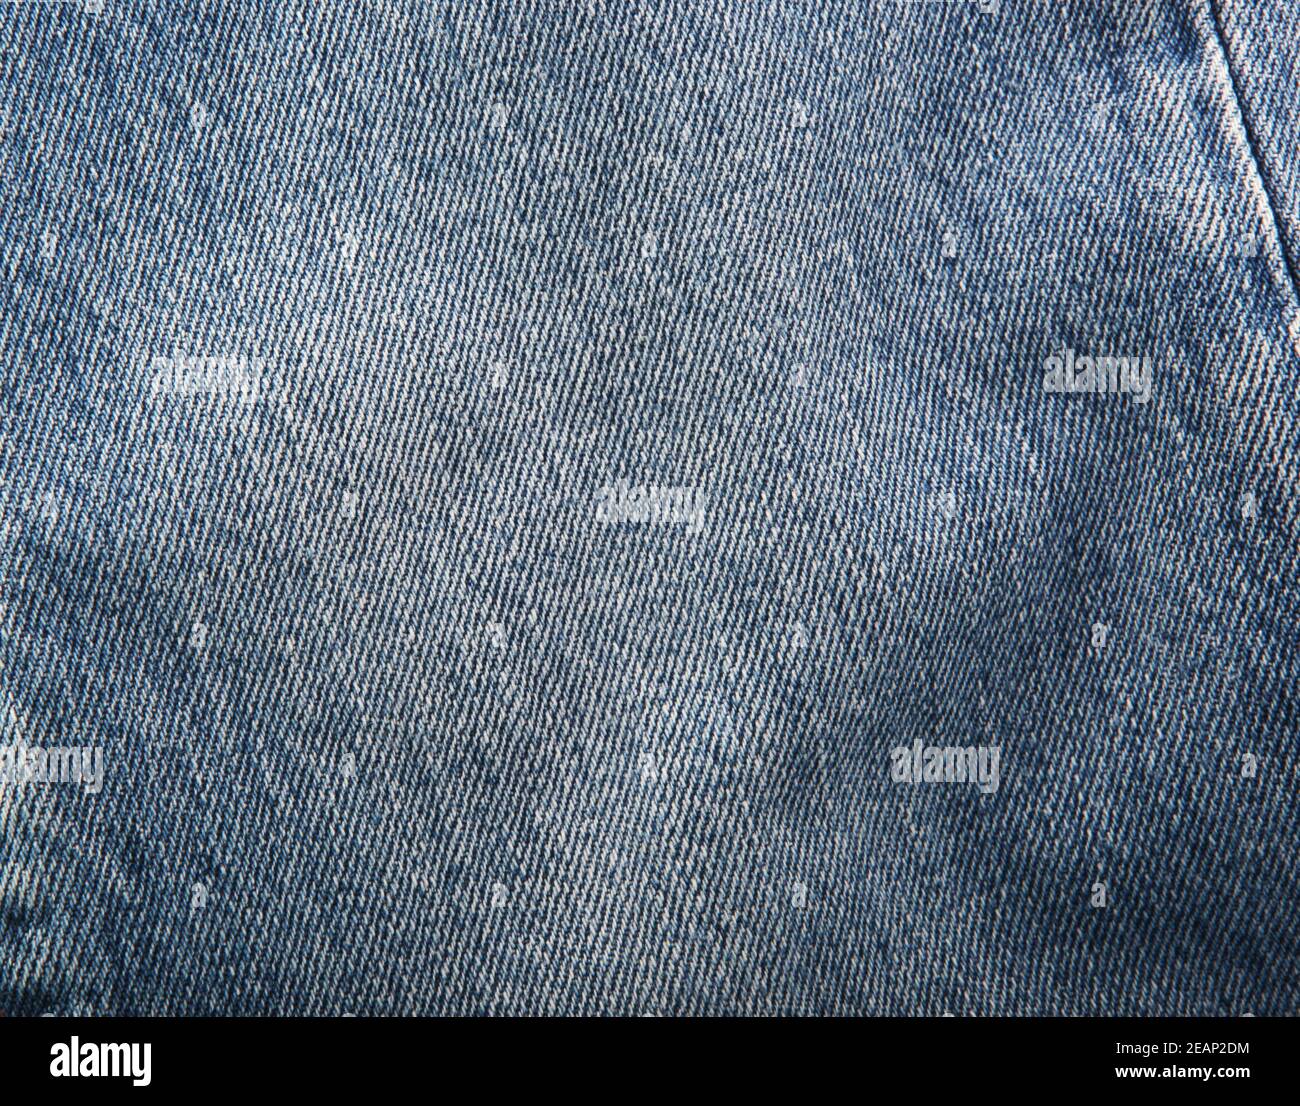 Blue-Jeans Texture Background Banque D'Images